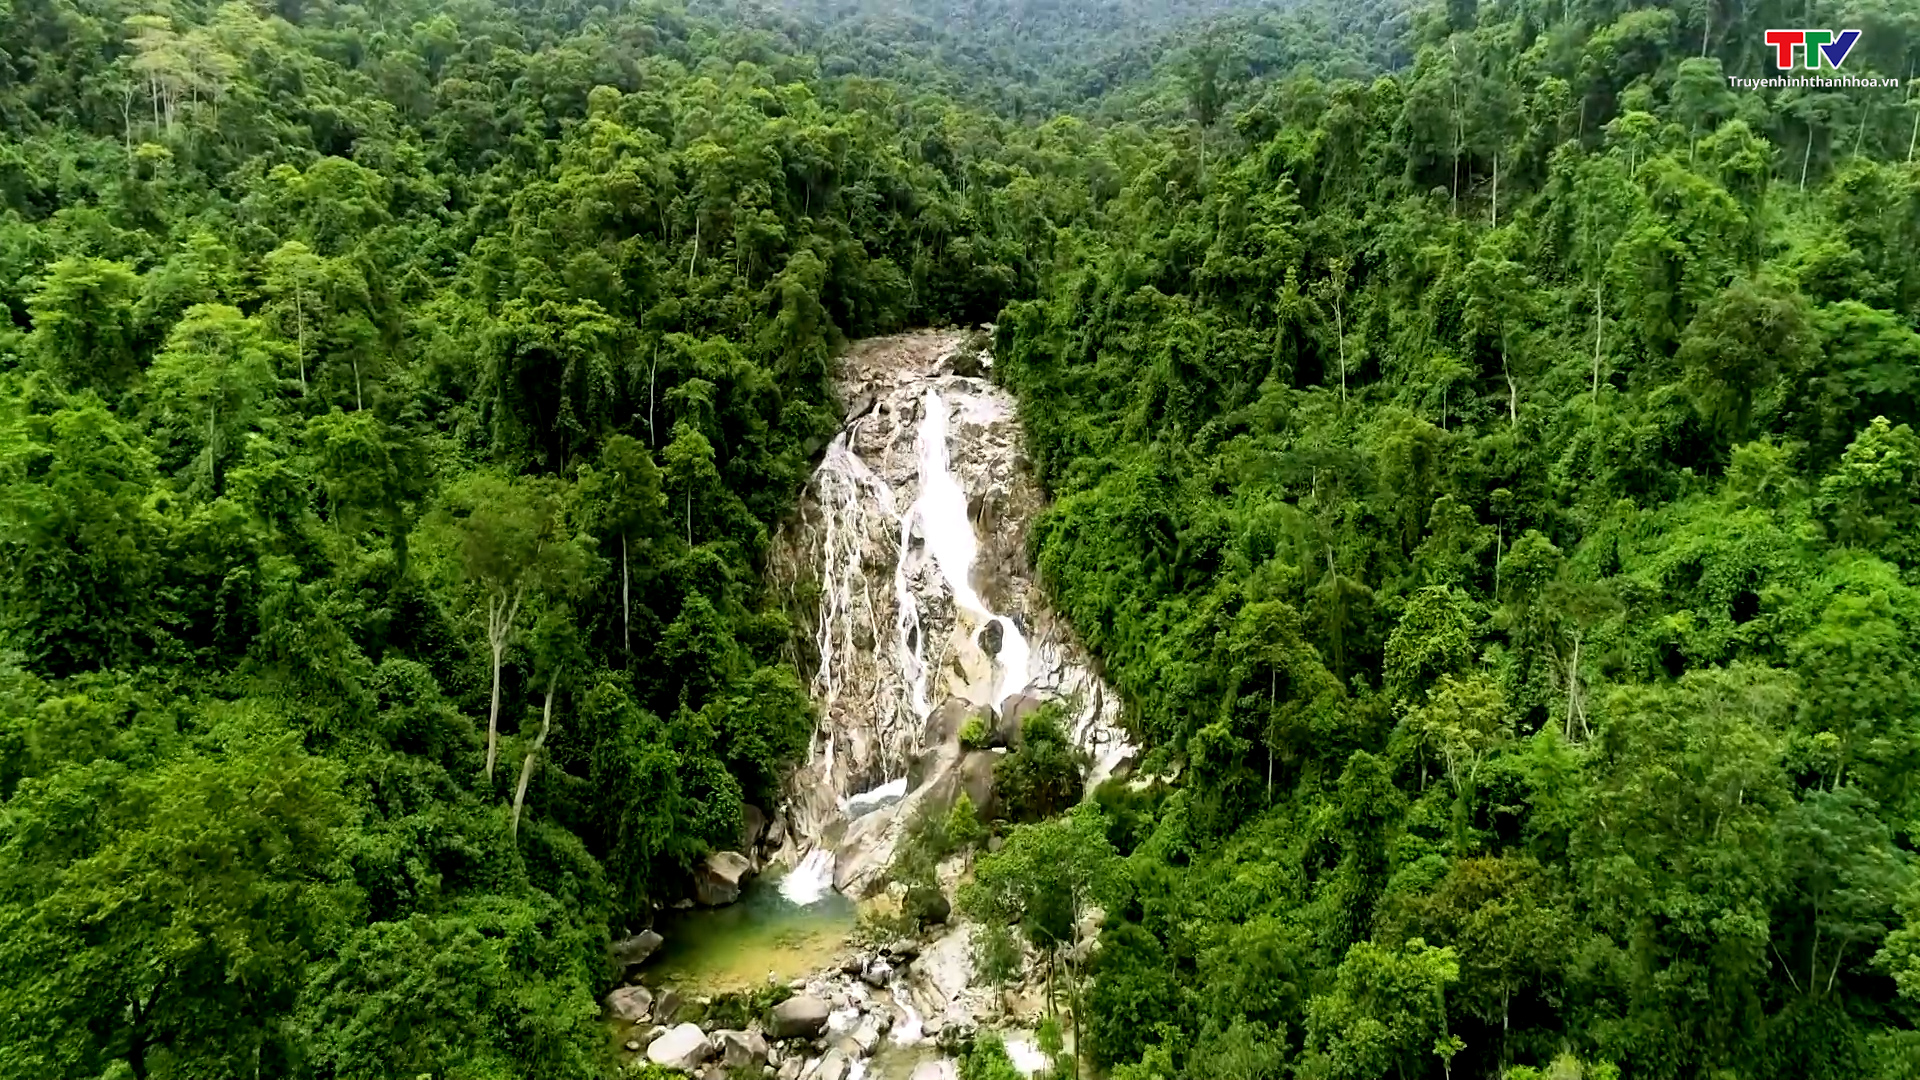 Sông, suối, thác - Món quà từ thiên nhiên hấp dẫn du khách - Ảnh 4.